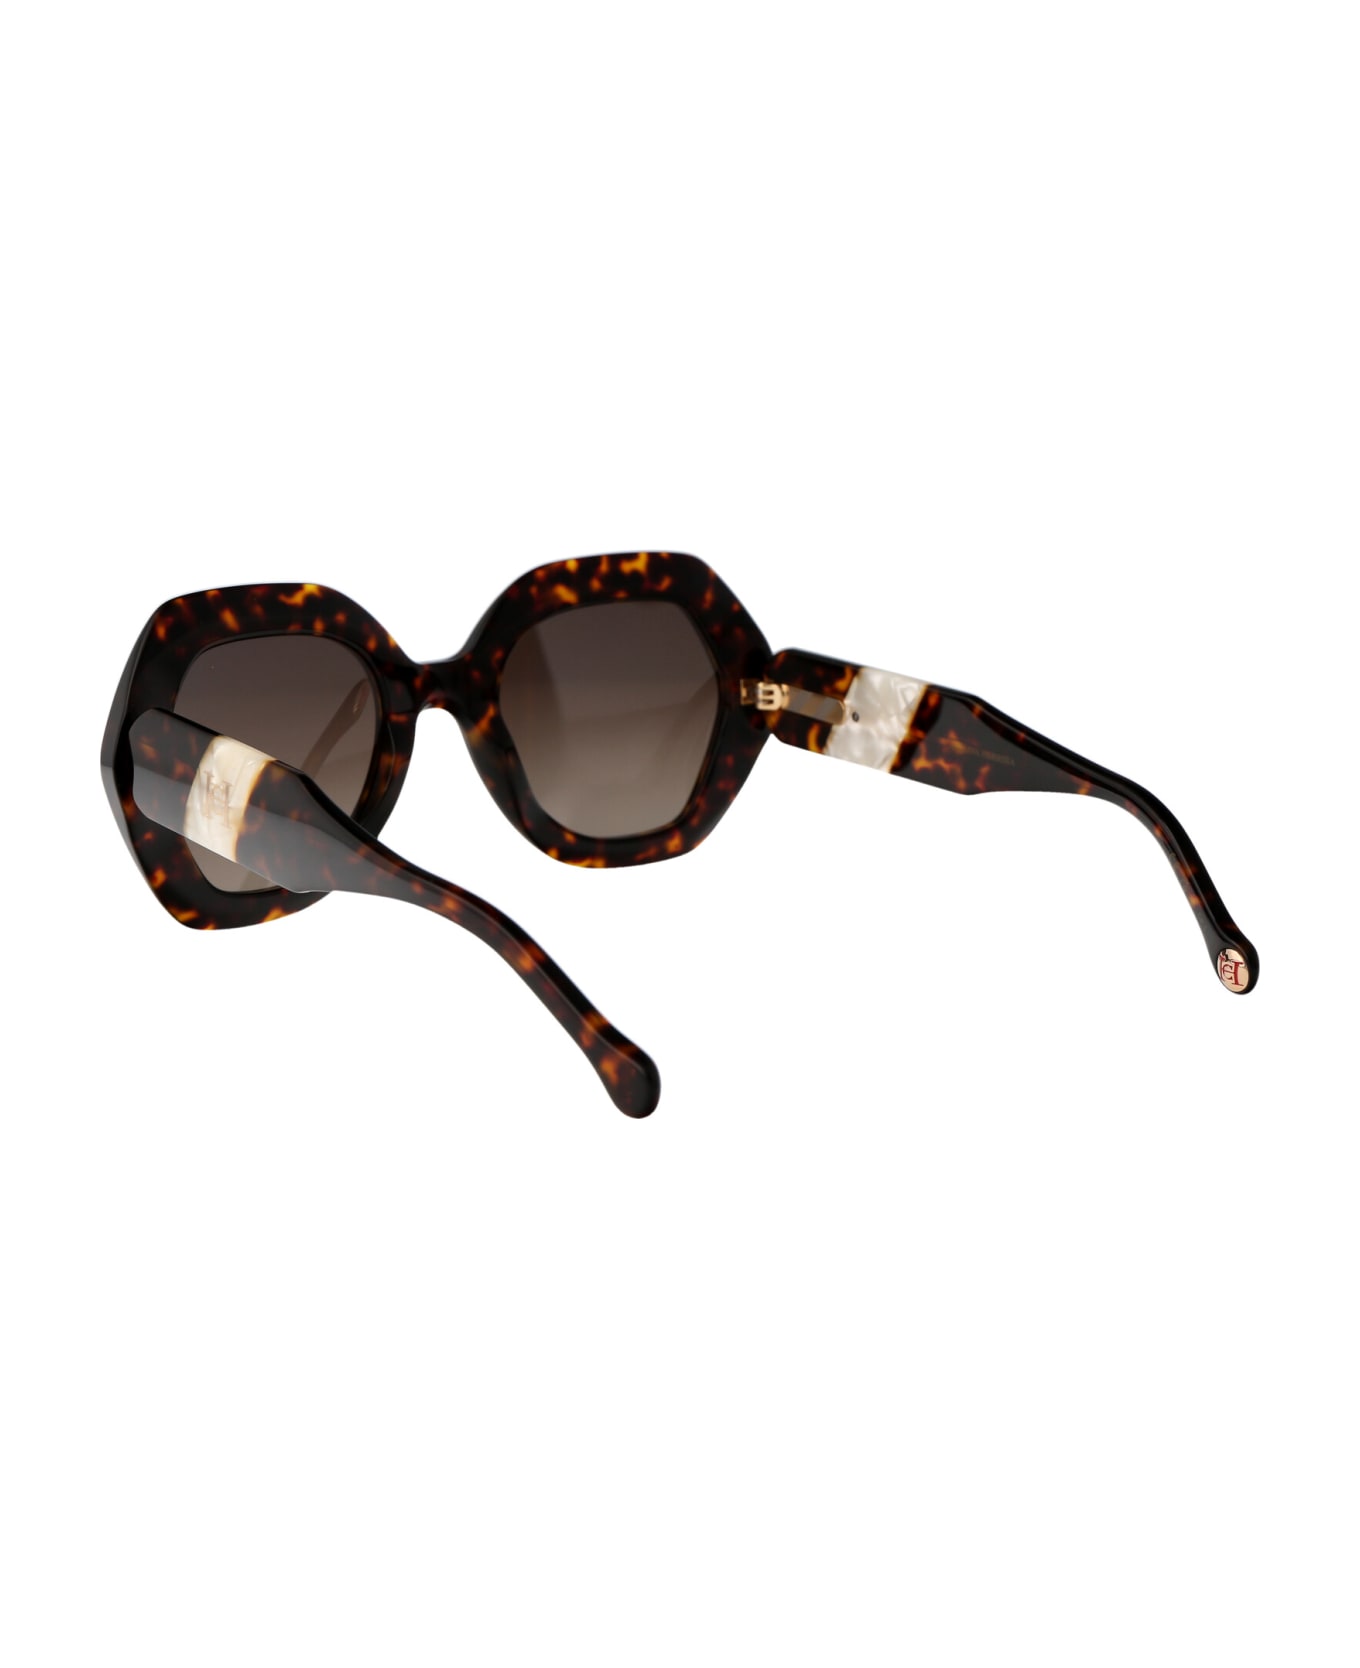 Carolina Herrera Her 0126/s Sunglasses - C9KHA HAVANA WHITE